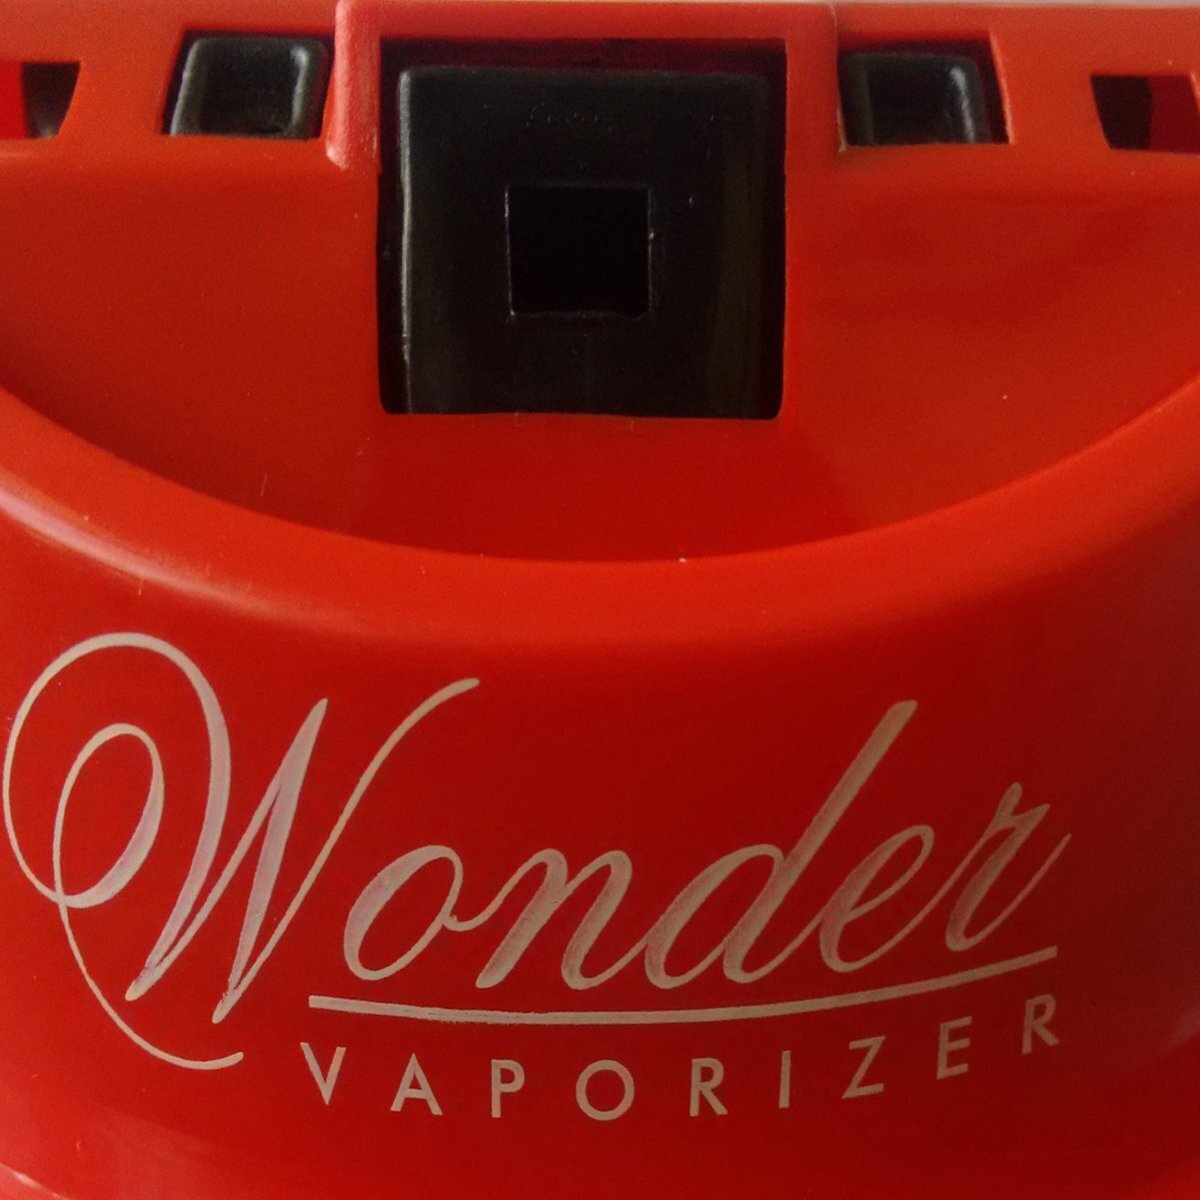 Wonder Steam Inhaler